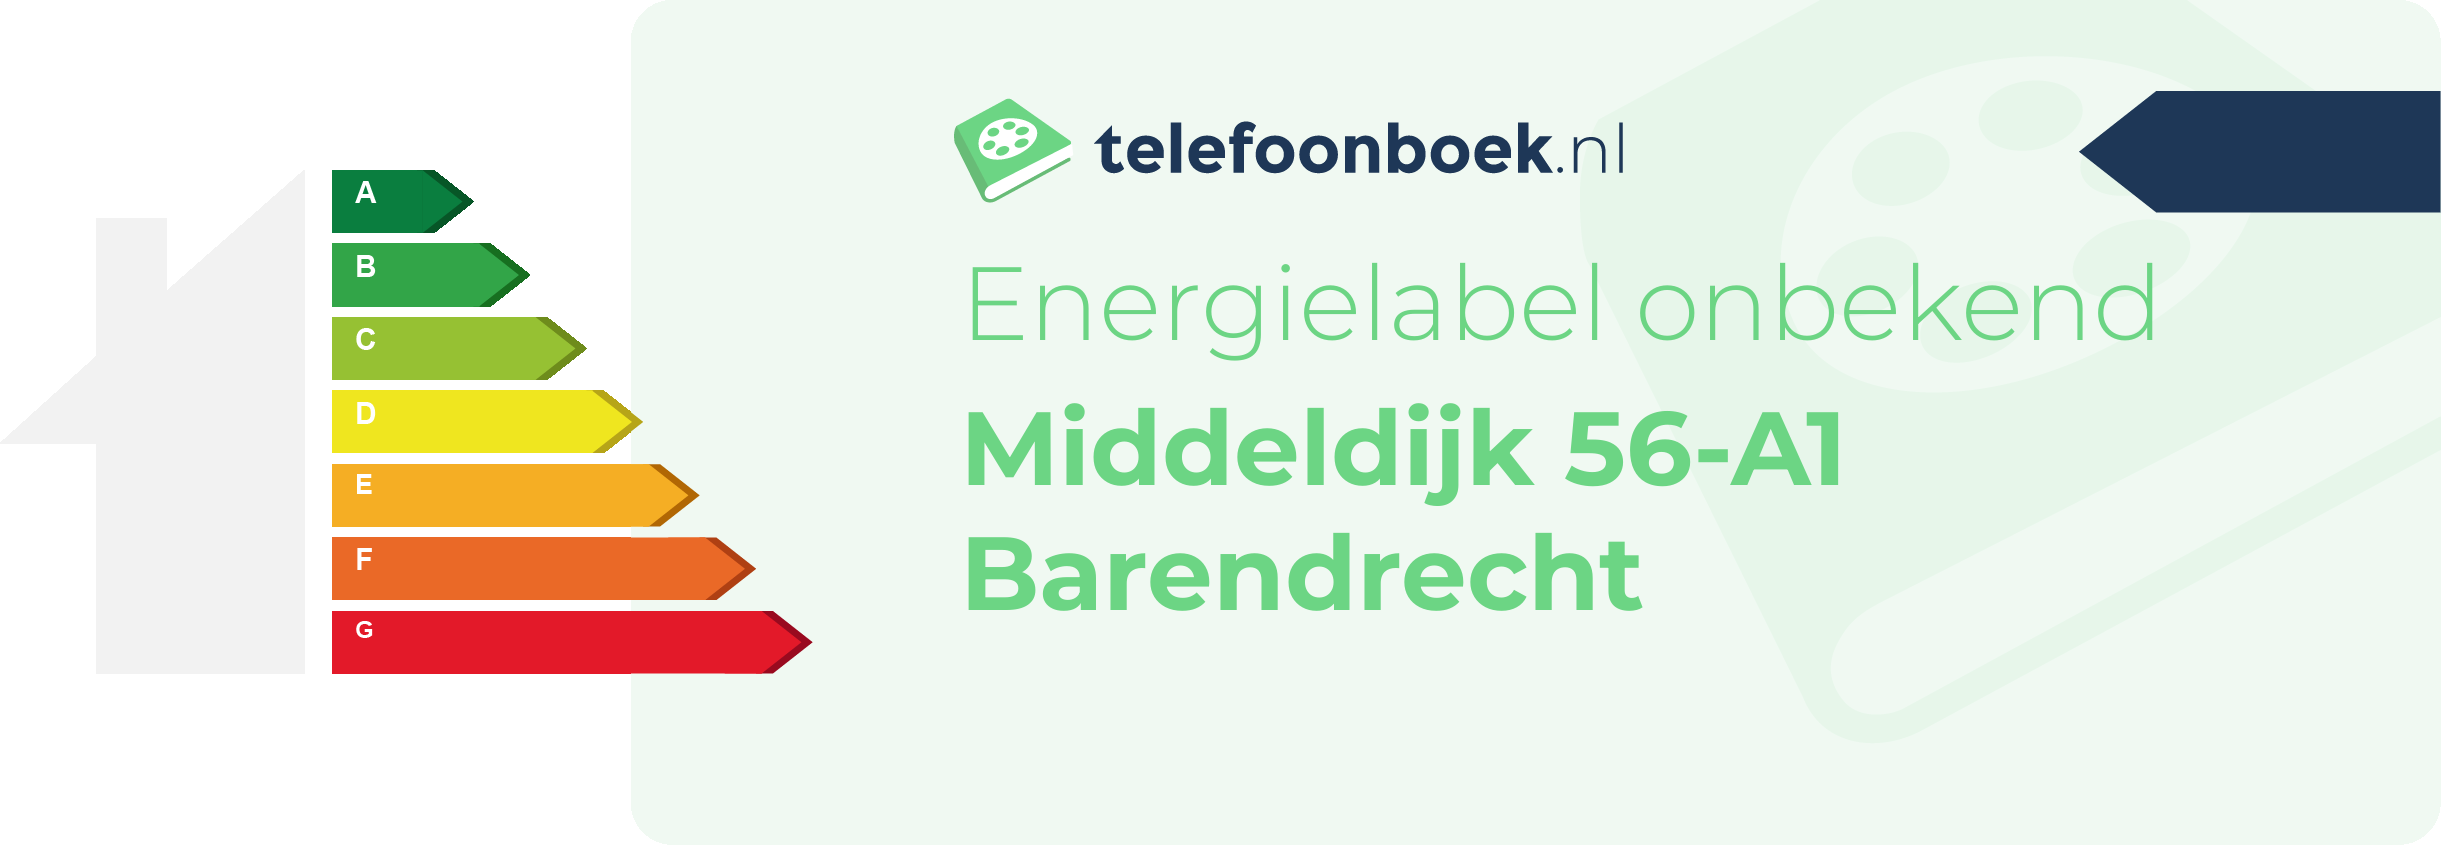 Energielabel Middeldijk 56-A1 Barendrecht